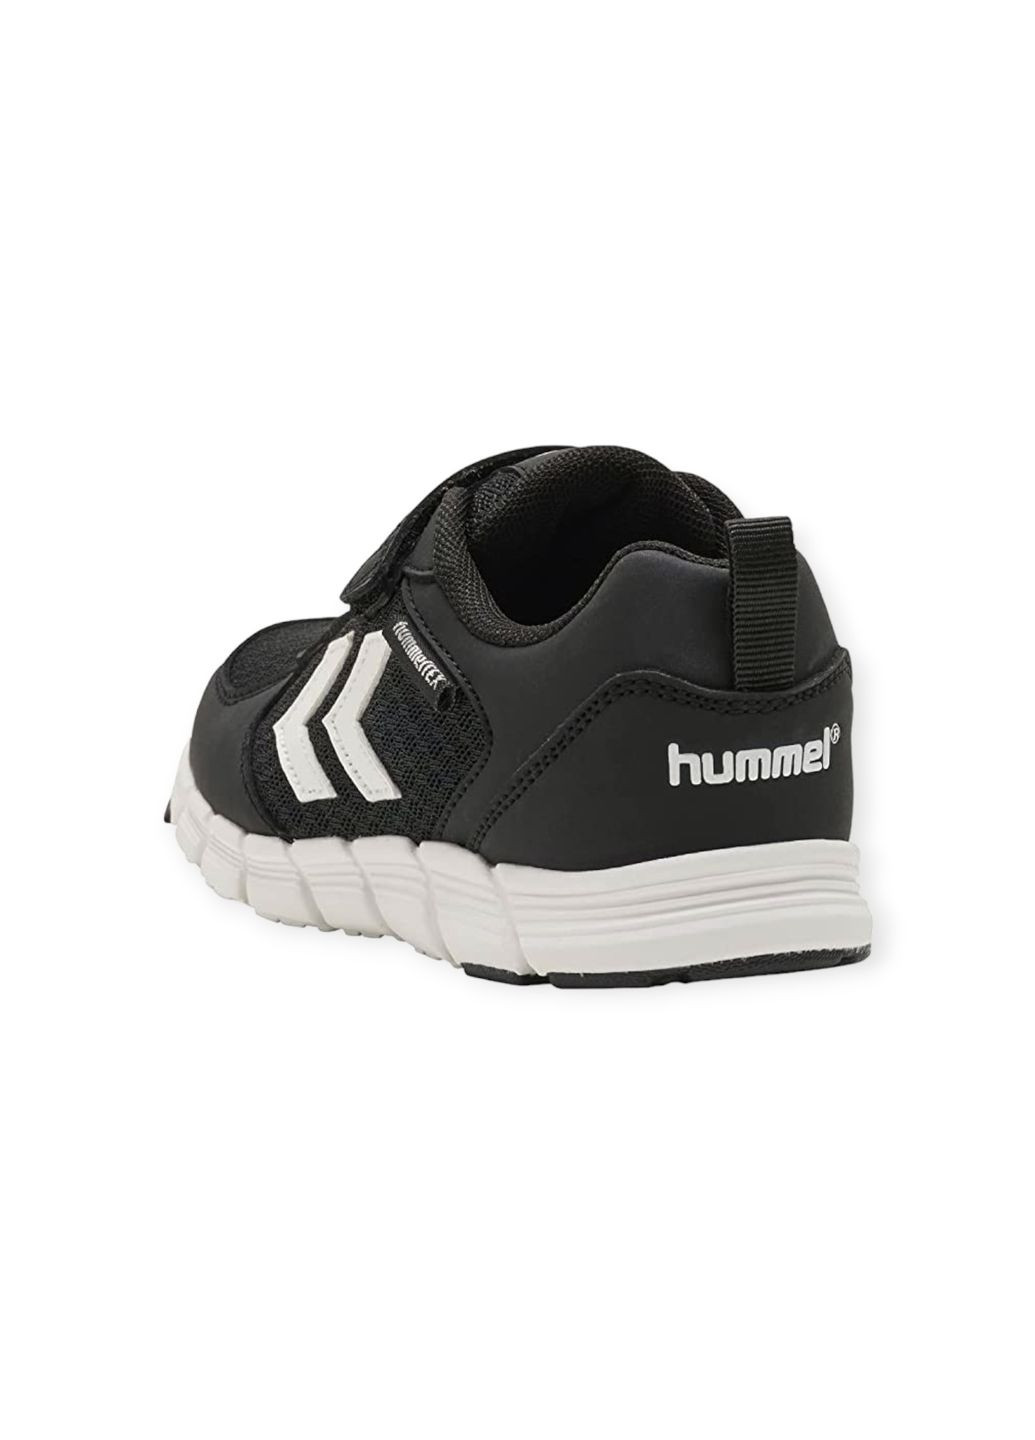 Черные всесезон кроссовки для мальчика водостойкие speed tex jr 212593-2001 мембрана (32) Hummel